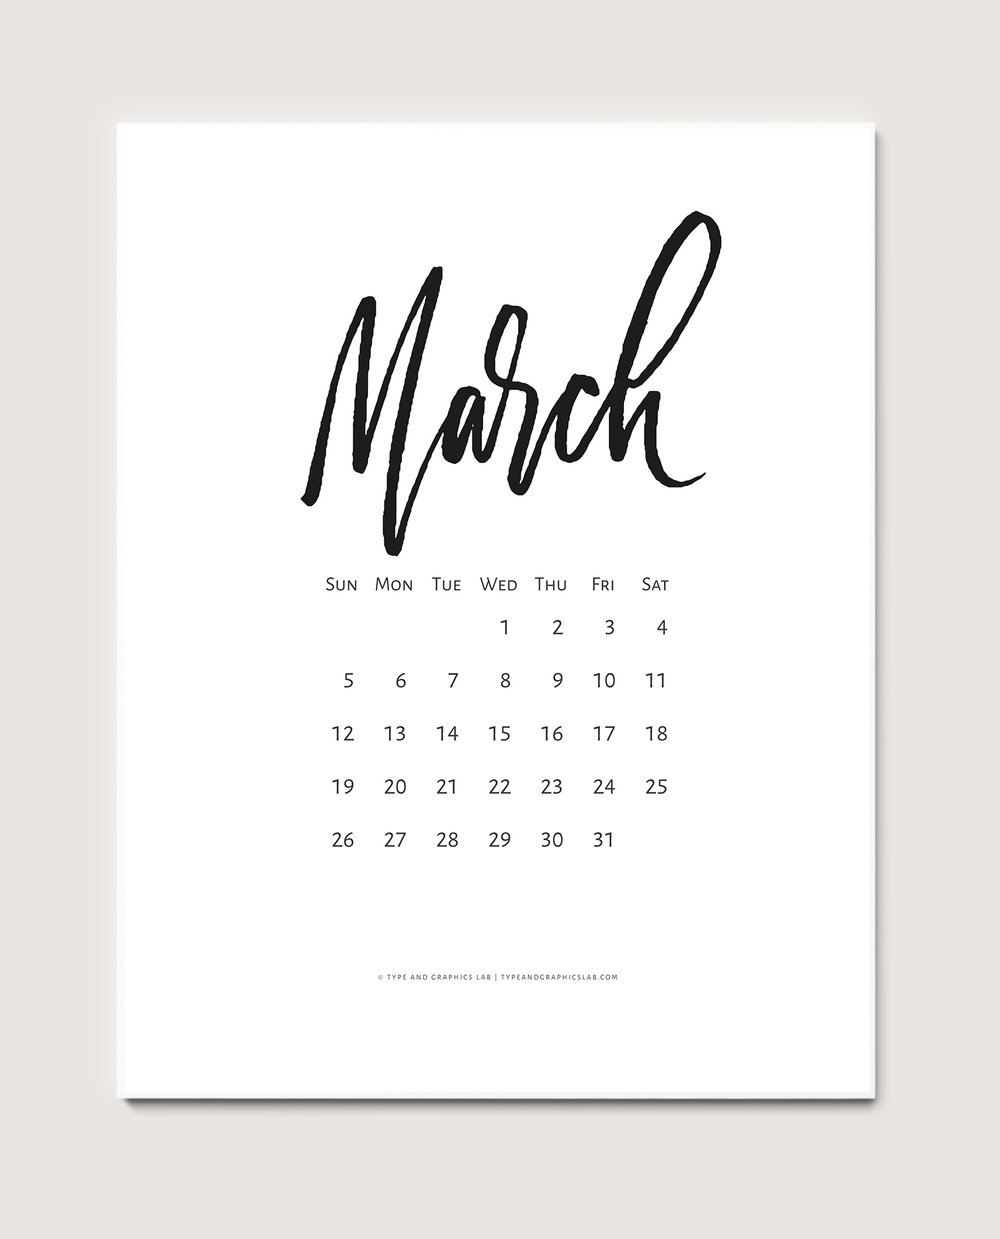 Календарь март 2017. Март леттеринг календарь. Каллиграфия календарь март.